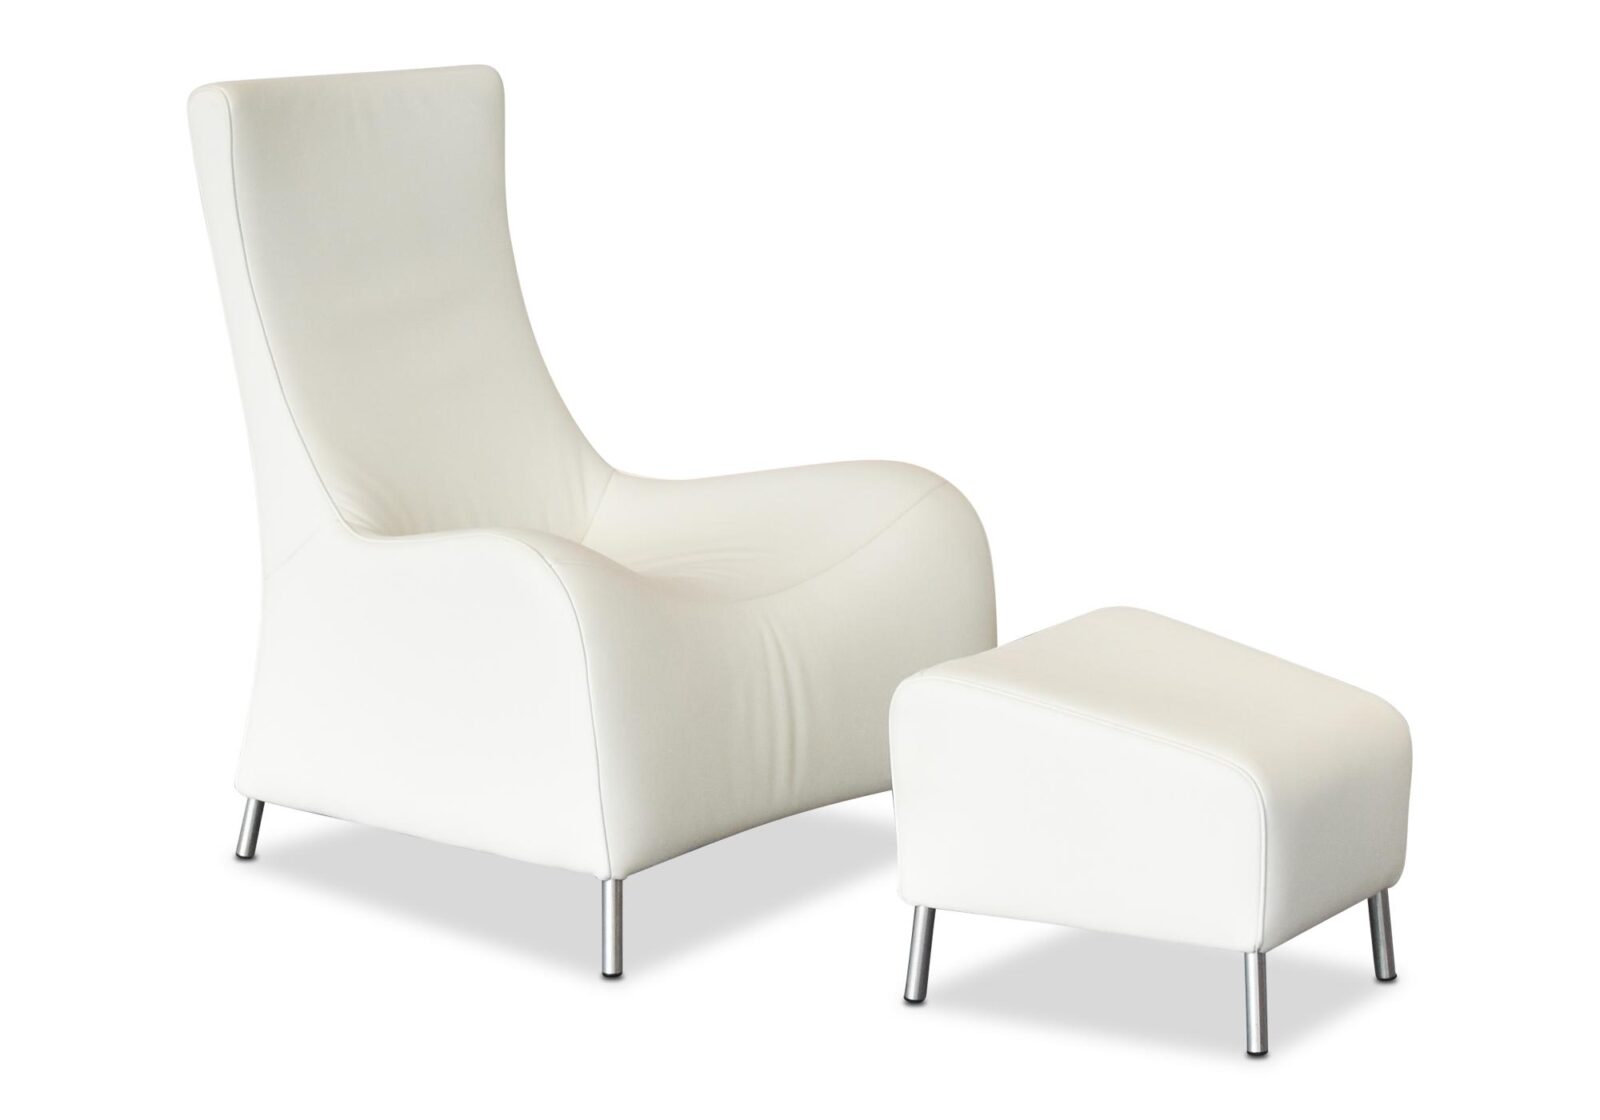 Sessel mit Hocker DS 26401  jetzt Aktion. Bezug: Leder. Farbe: Weiss. Erhältlich bei Möbel Gallati.